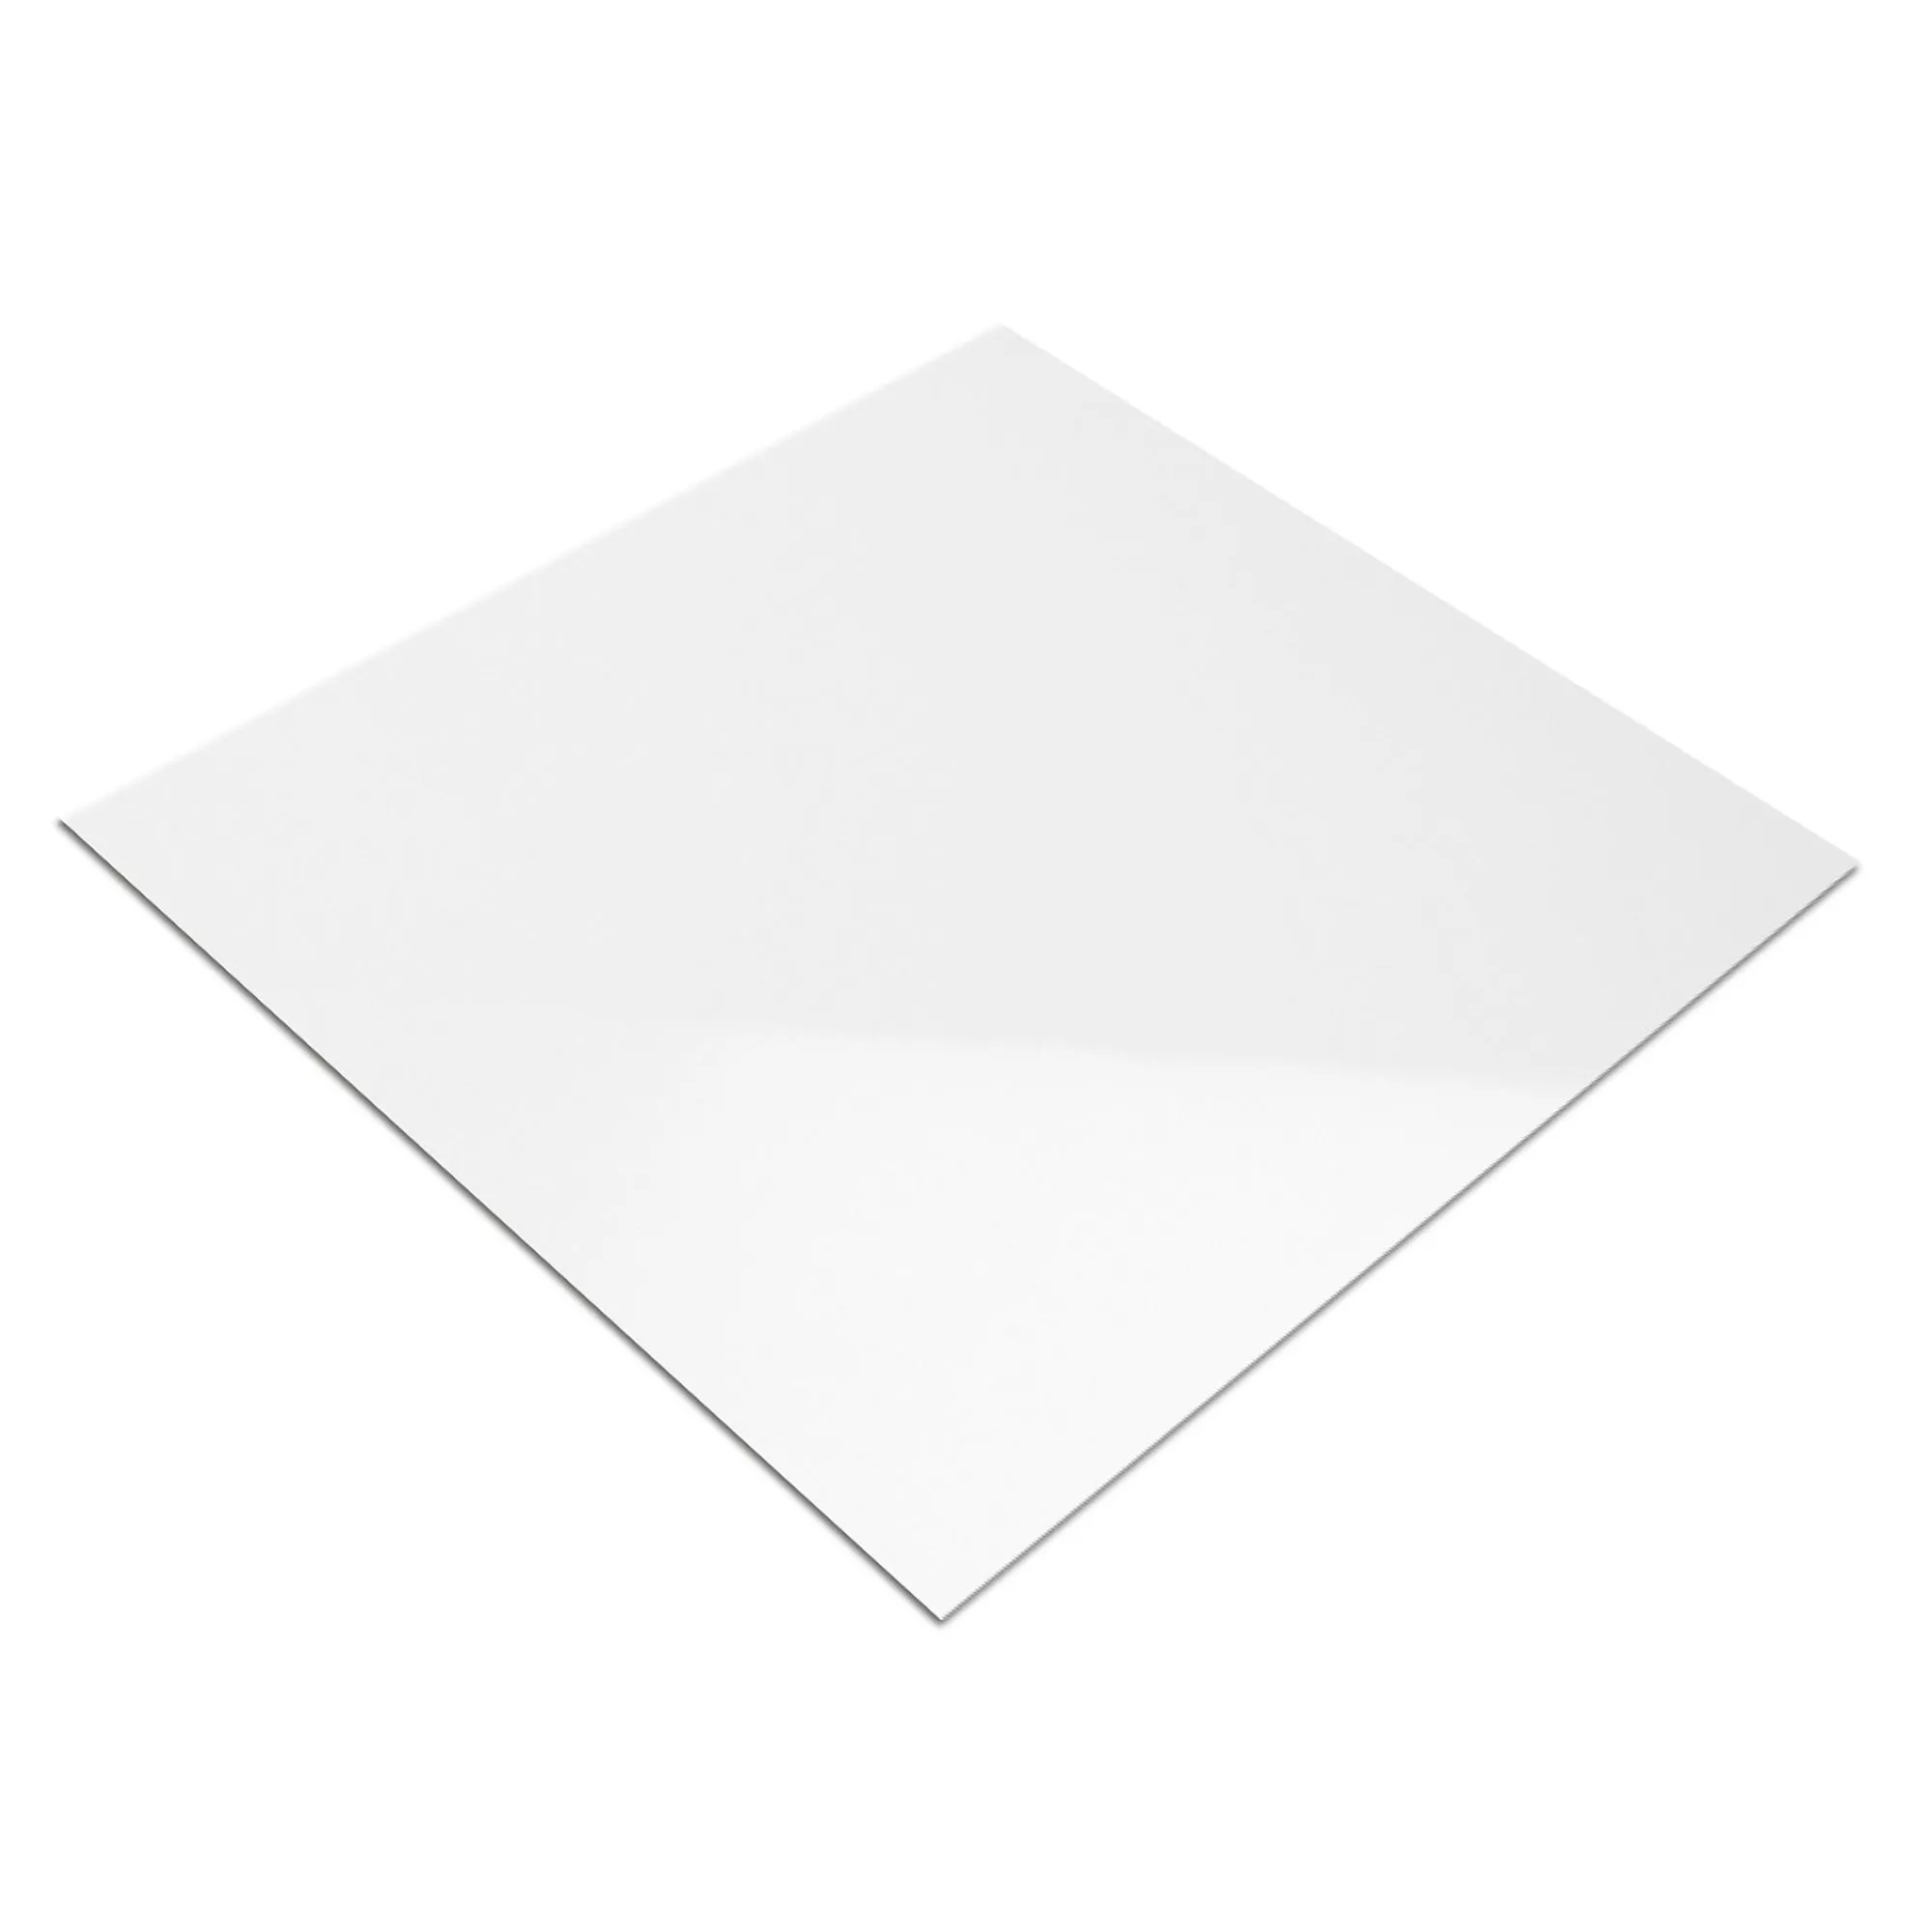 Próbka Płytki Ścienne Fenway Biały Błyszczący 15x15cm